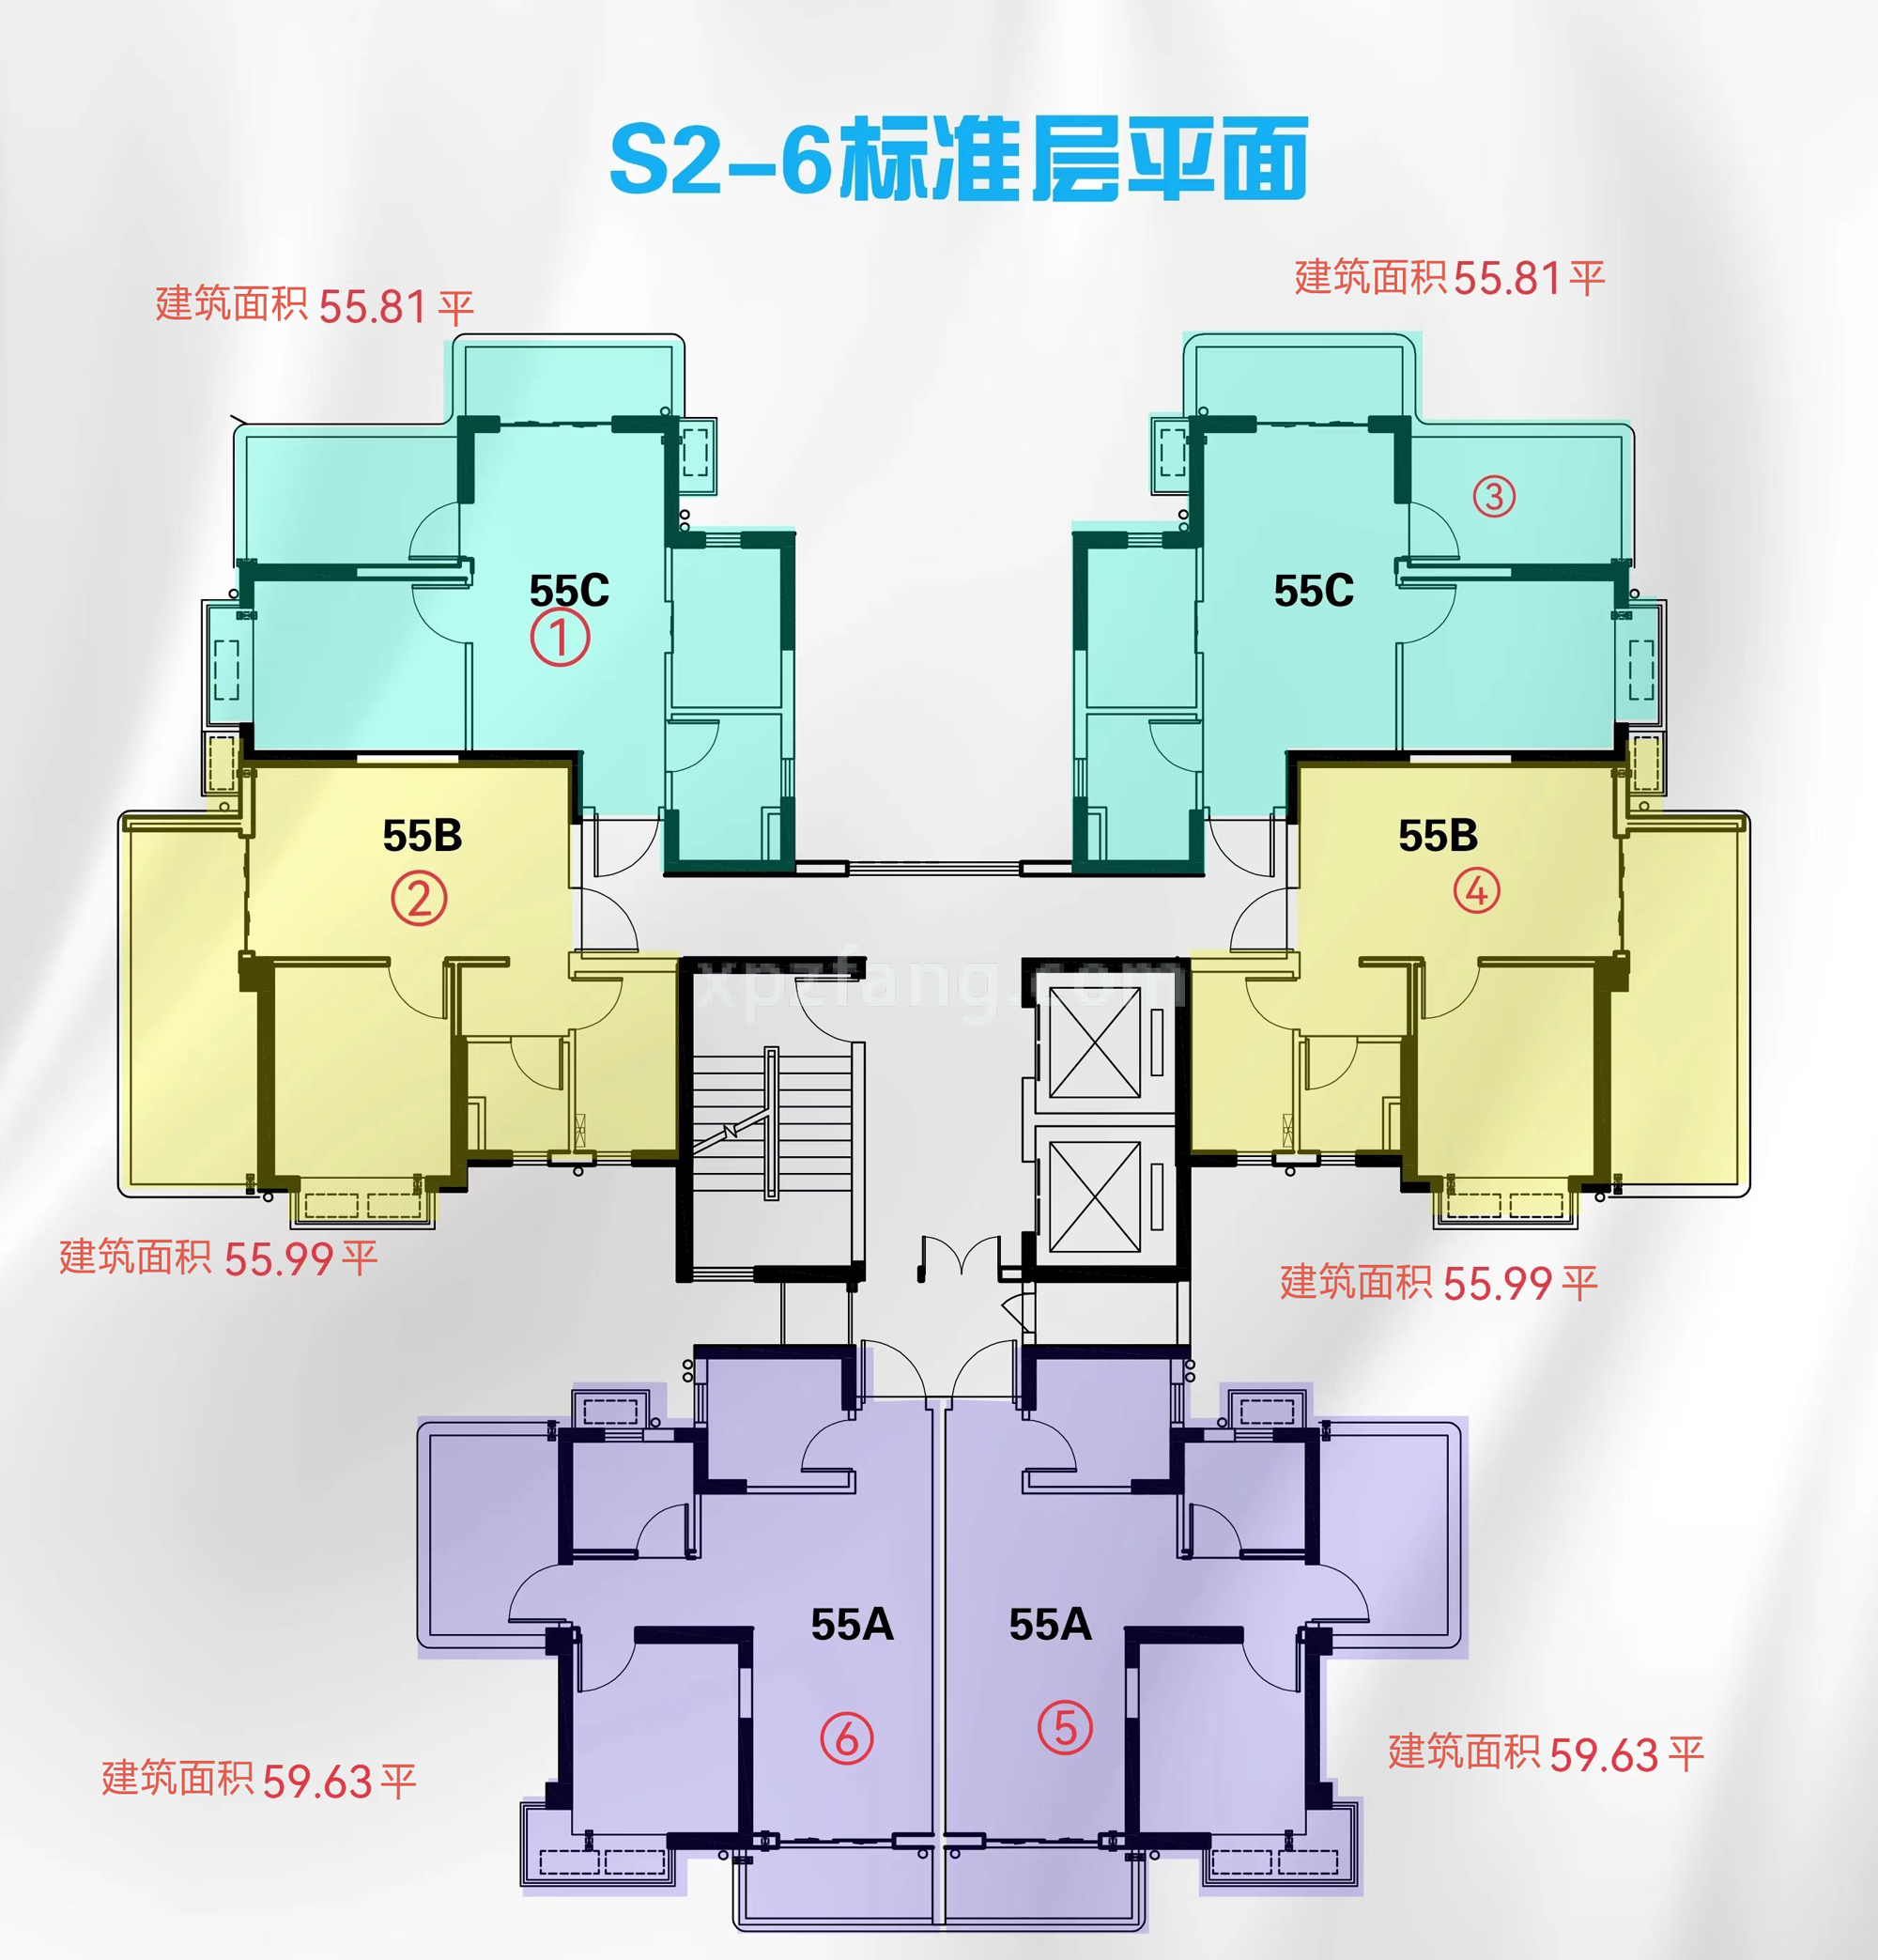 荣和银滩oneS2-6楼层平面图